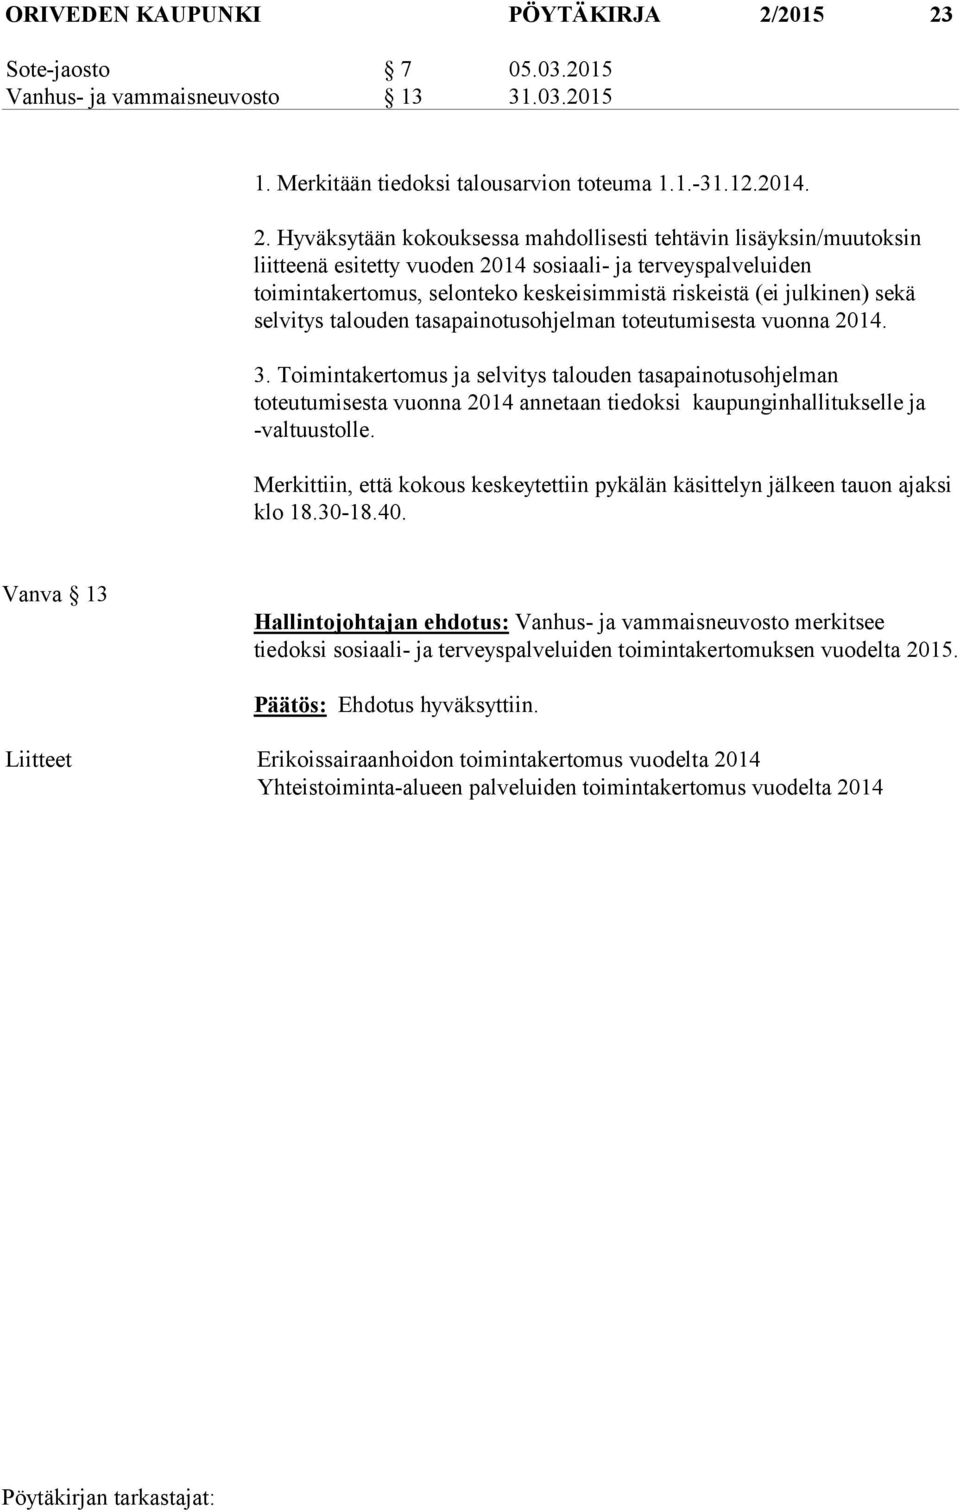 Sote-jaosto 7 05.03.2015 Vanhus- ja vammaisneuvosto 13 31.03.2015 1. Merkitään tiedoksi talousarvion toteuma 1.1.-31.12.2014. 2.